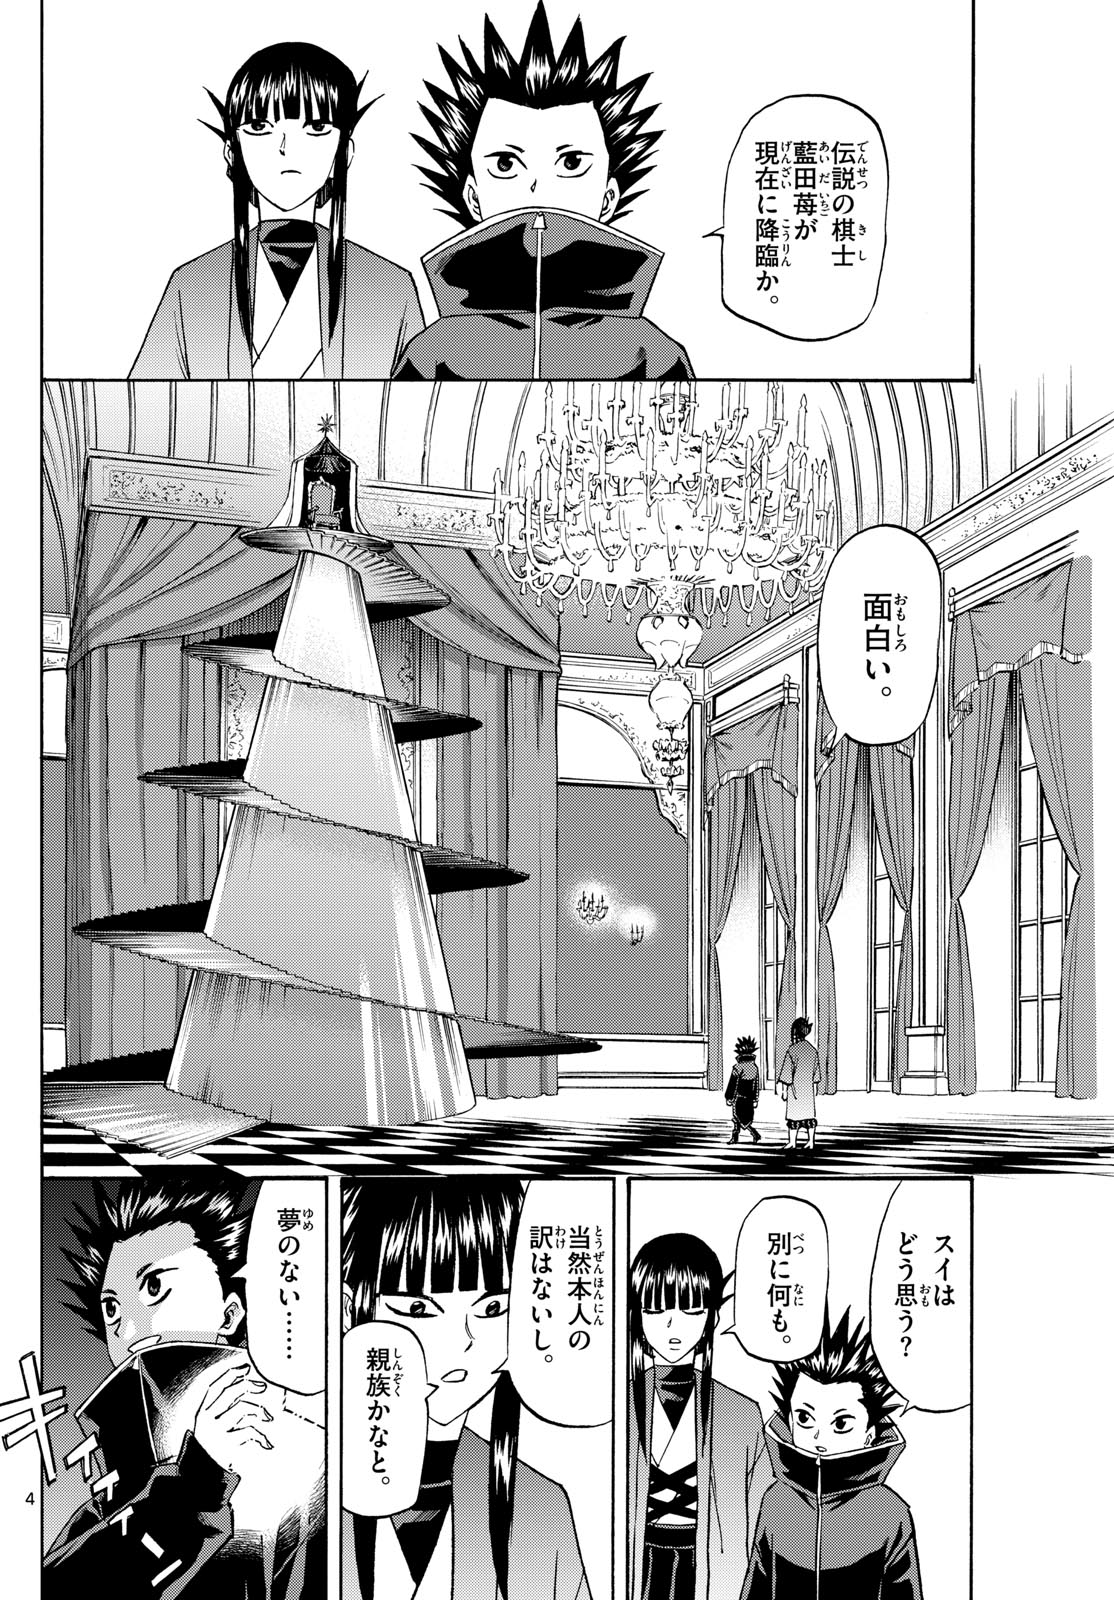 Tatsu to Ichigo - Chapter 191 - Page 4